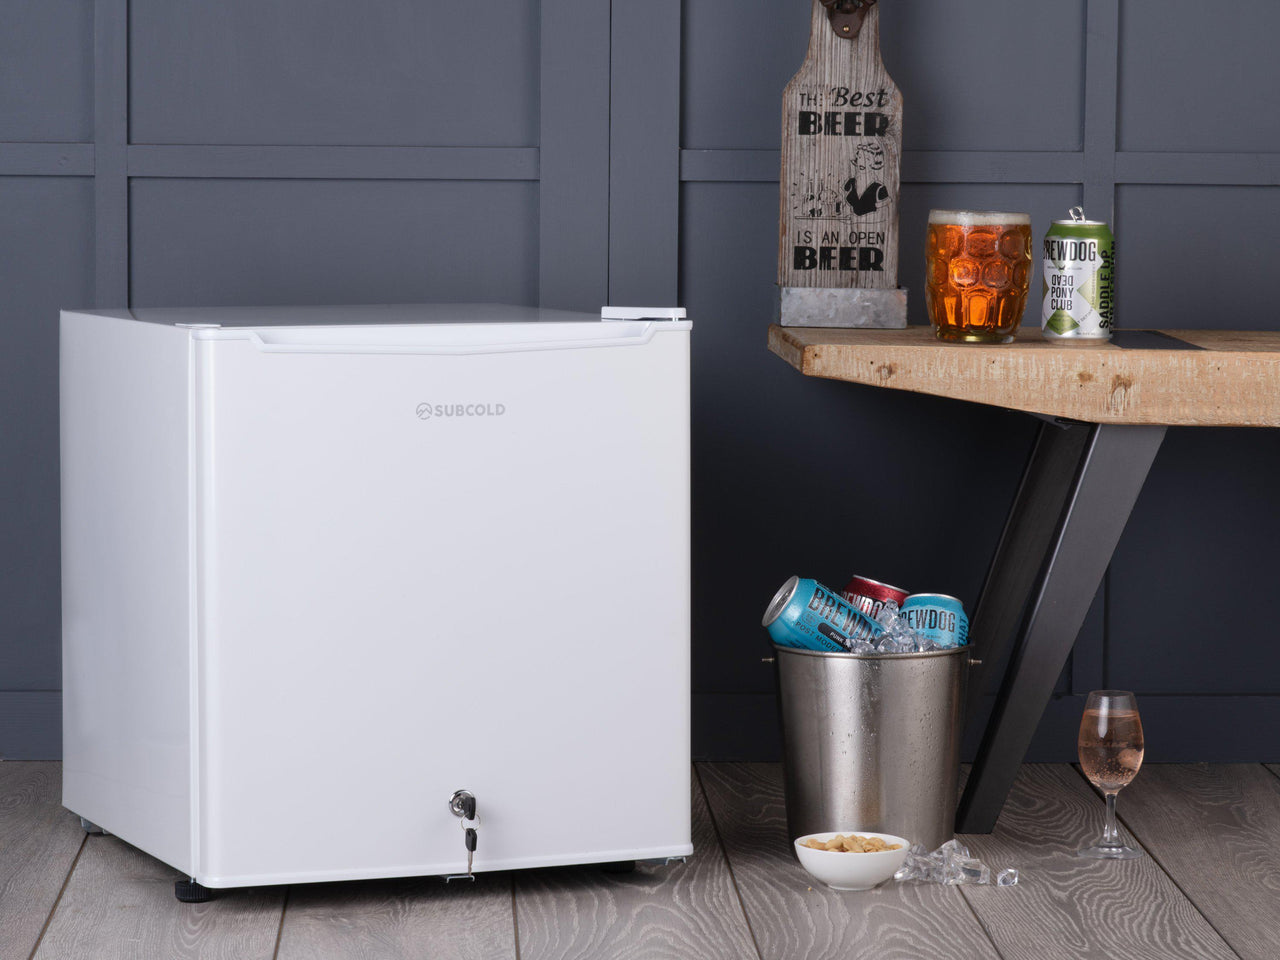 Subcold Eco 50 litre mini fridge in white lifestyle